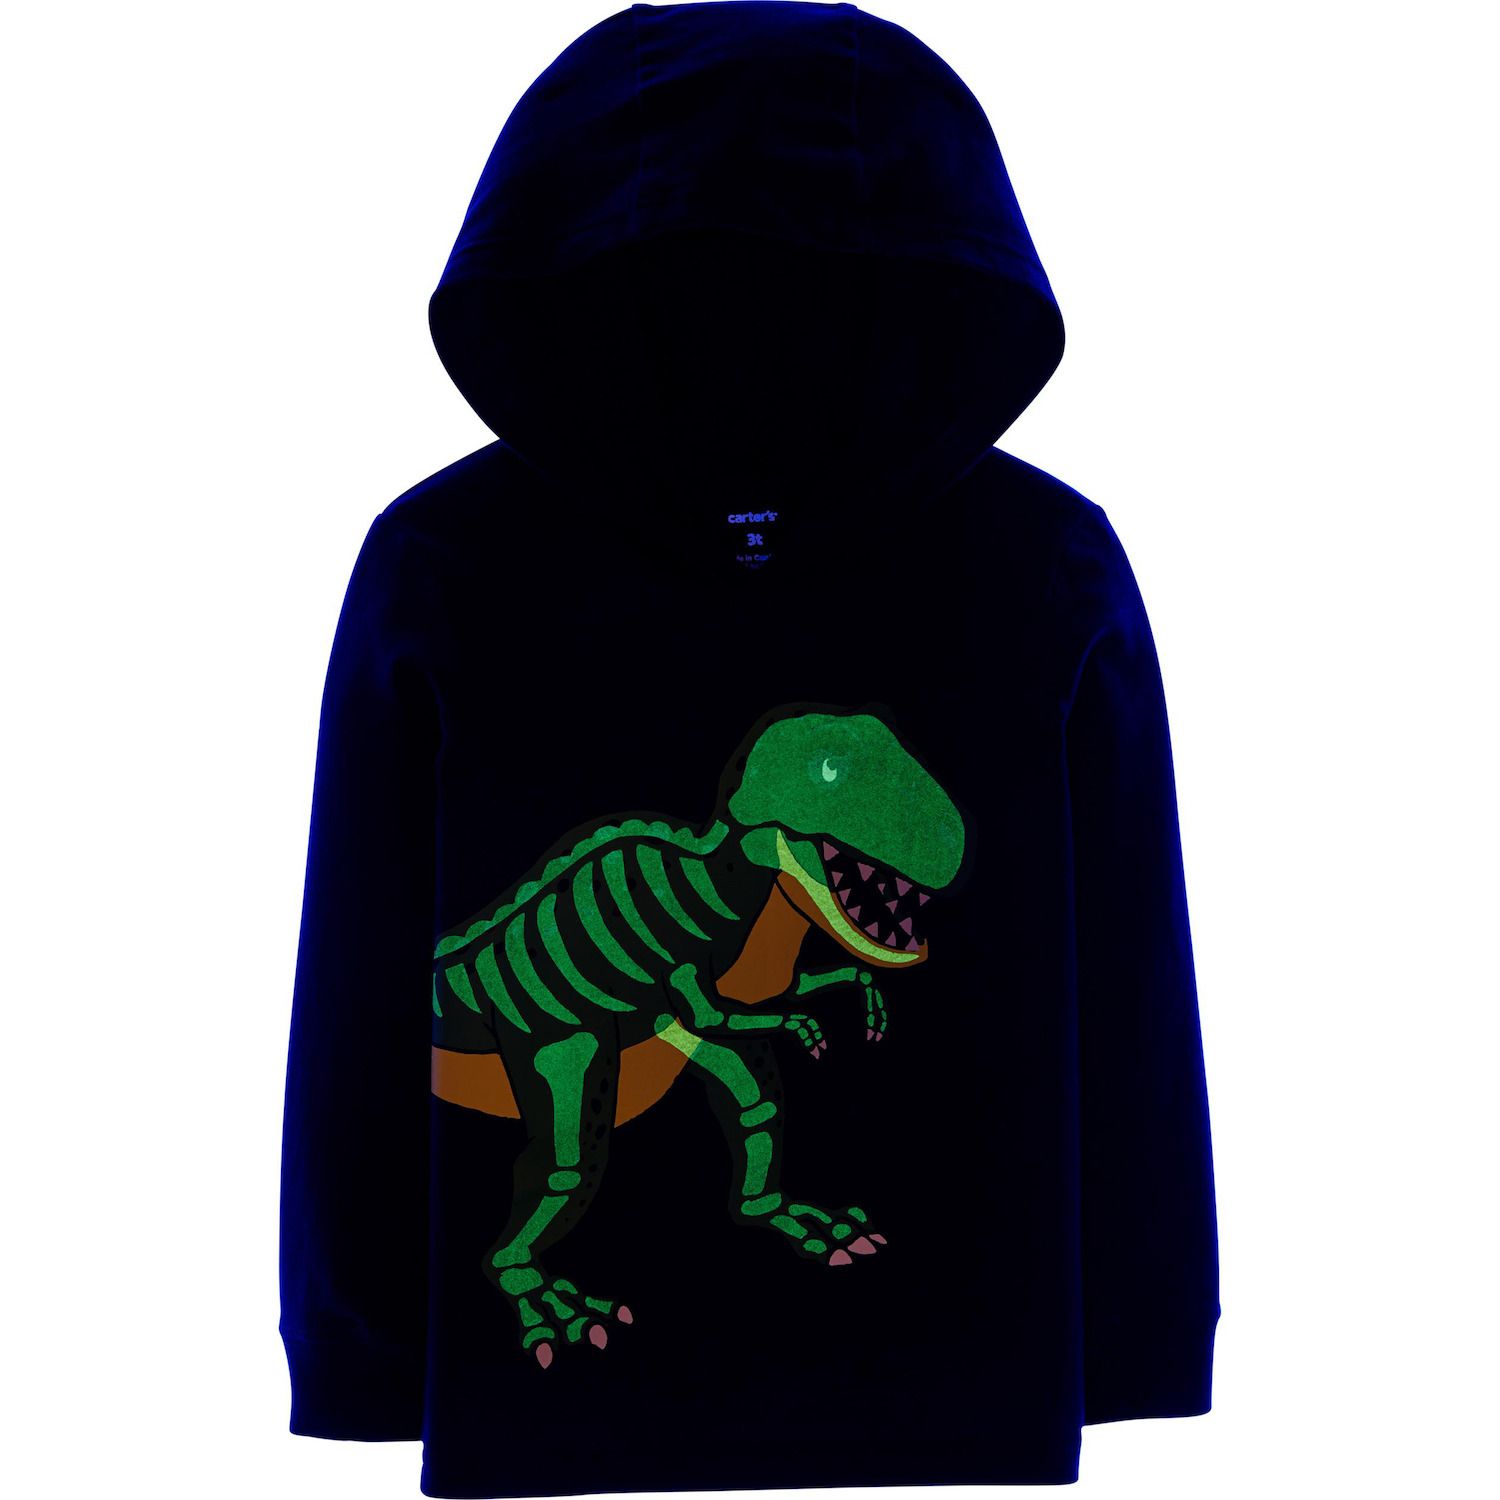 carter's dinosaur hoodie